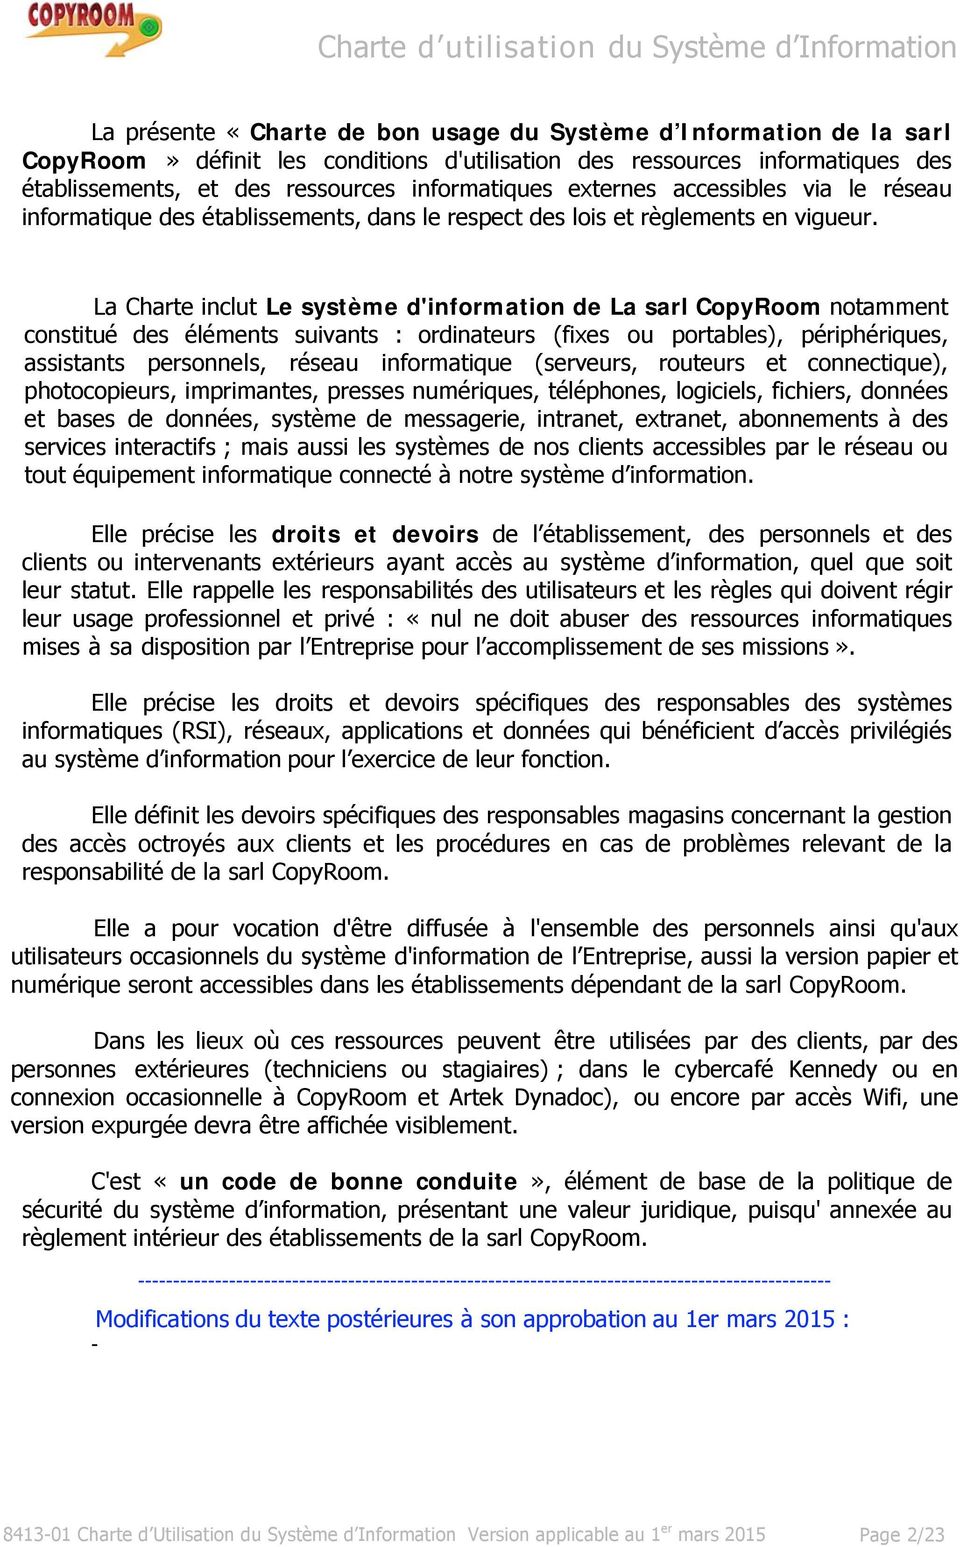 Charte Valeur Juridique